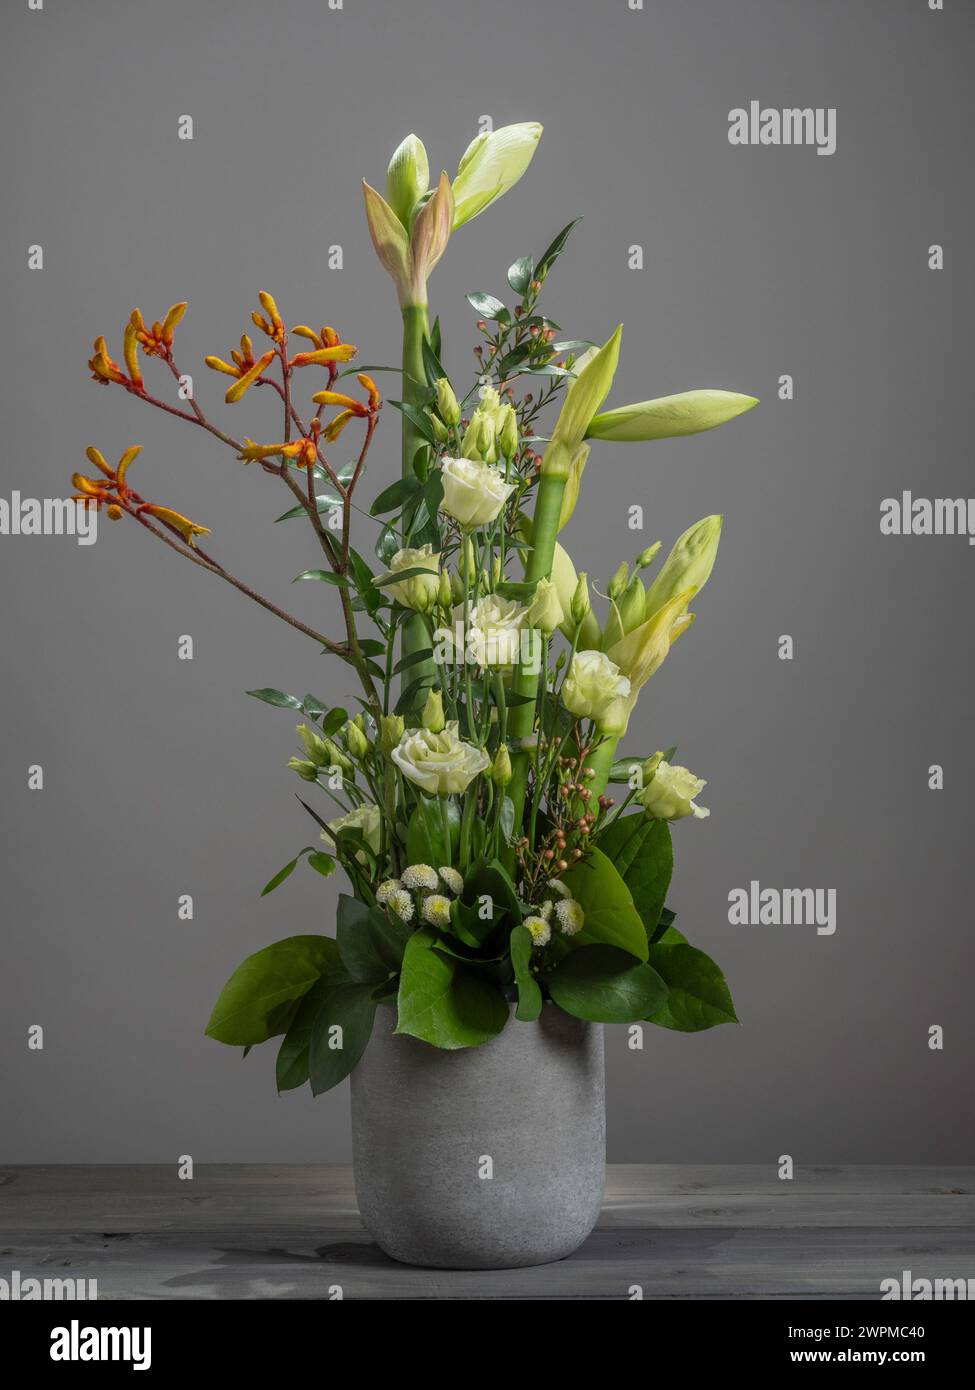 Composizione floreale di amaryllis giallo pallido, lisianto bianco, mini crisantemi e fiori di zampa di canguro in un contenitore di cemento. Foto Stock